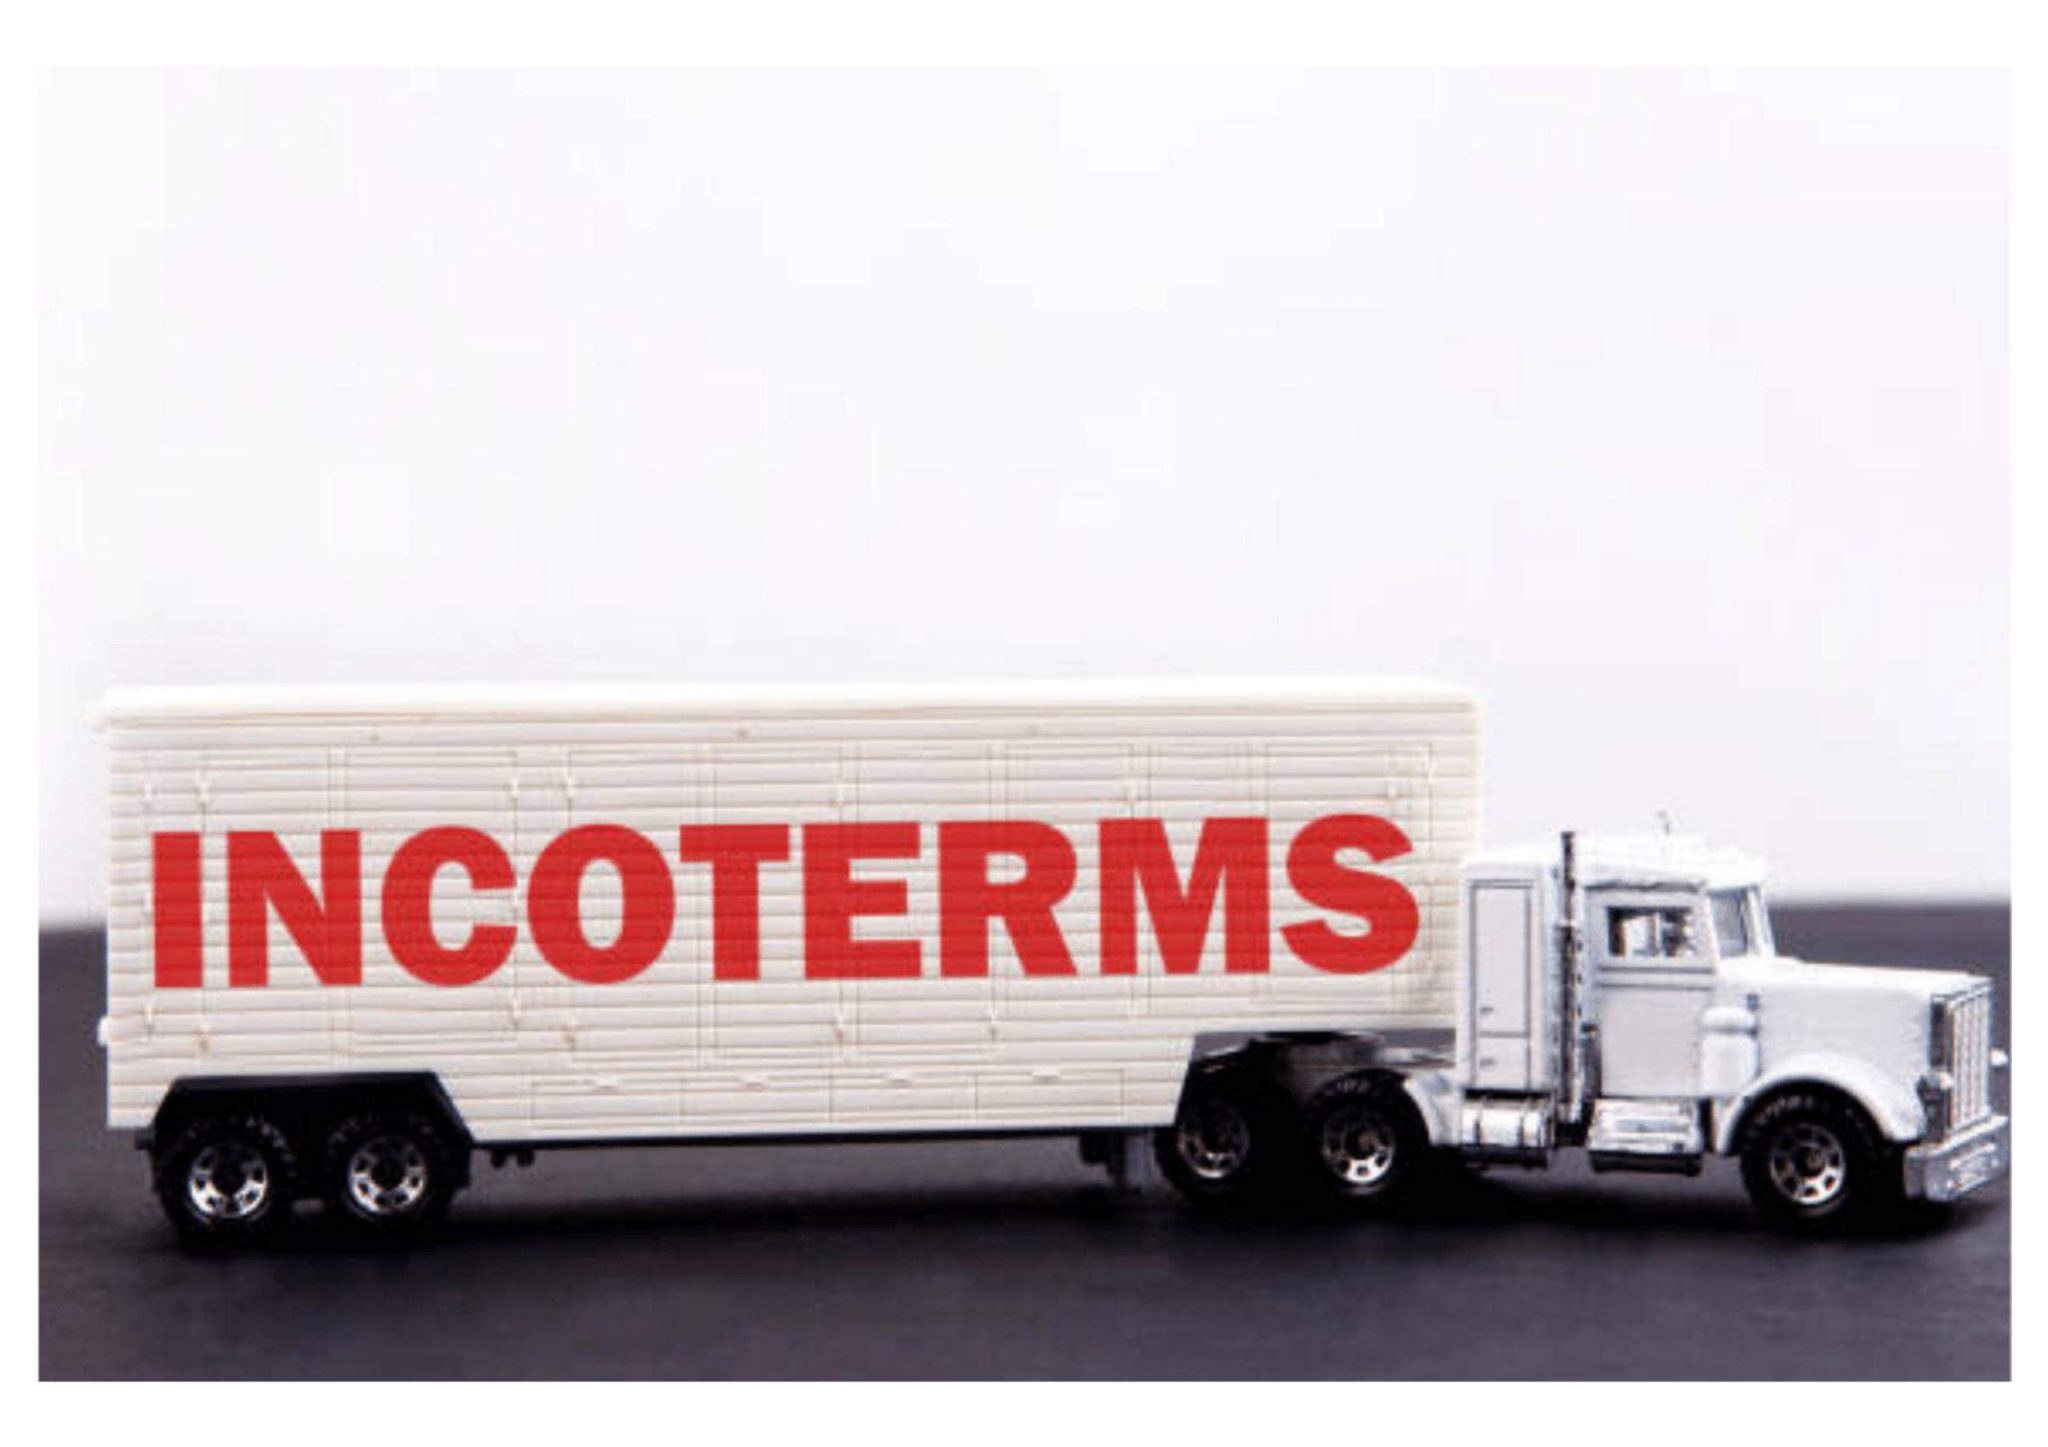 maîtriser les incoterms camion poids lourd blanc avec écrit en gros et rouge "incoterms" sur la remorque